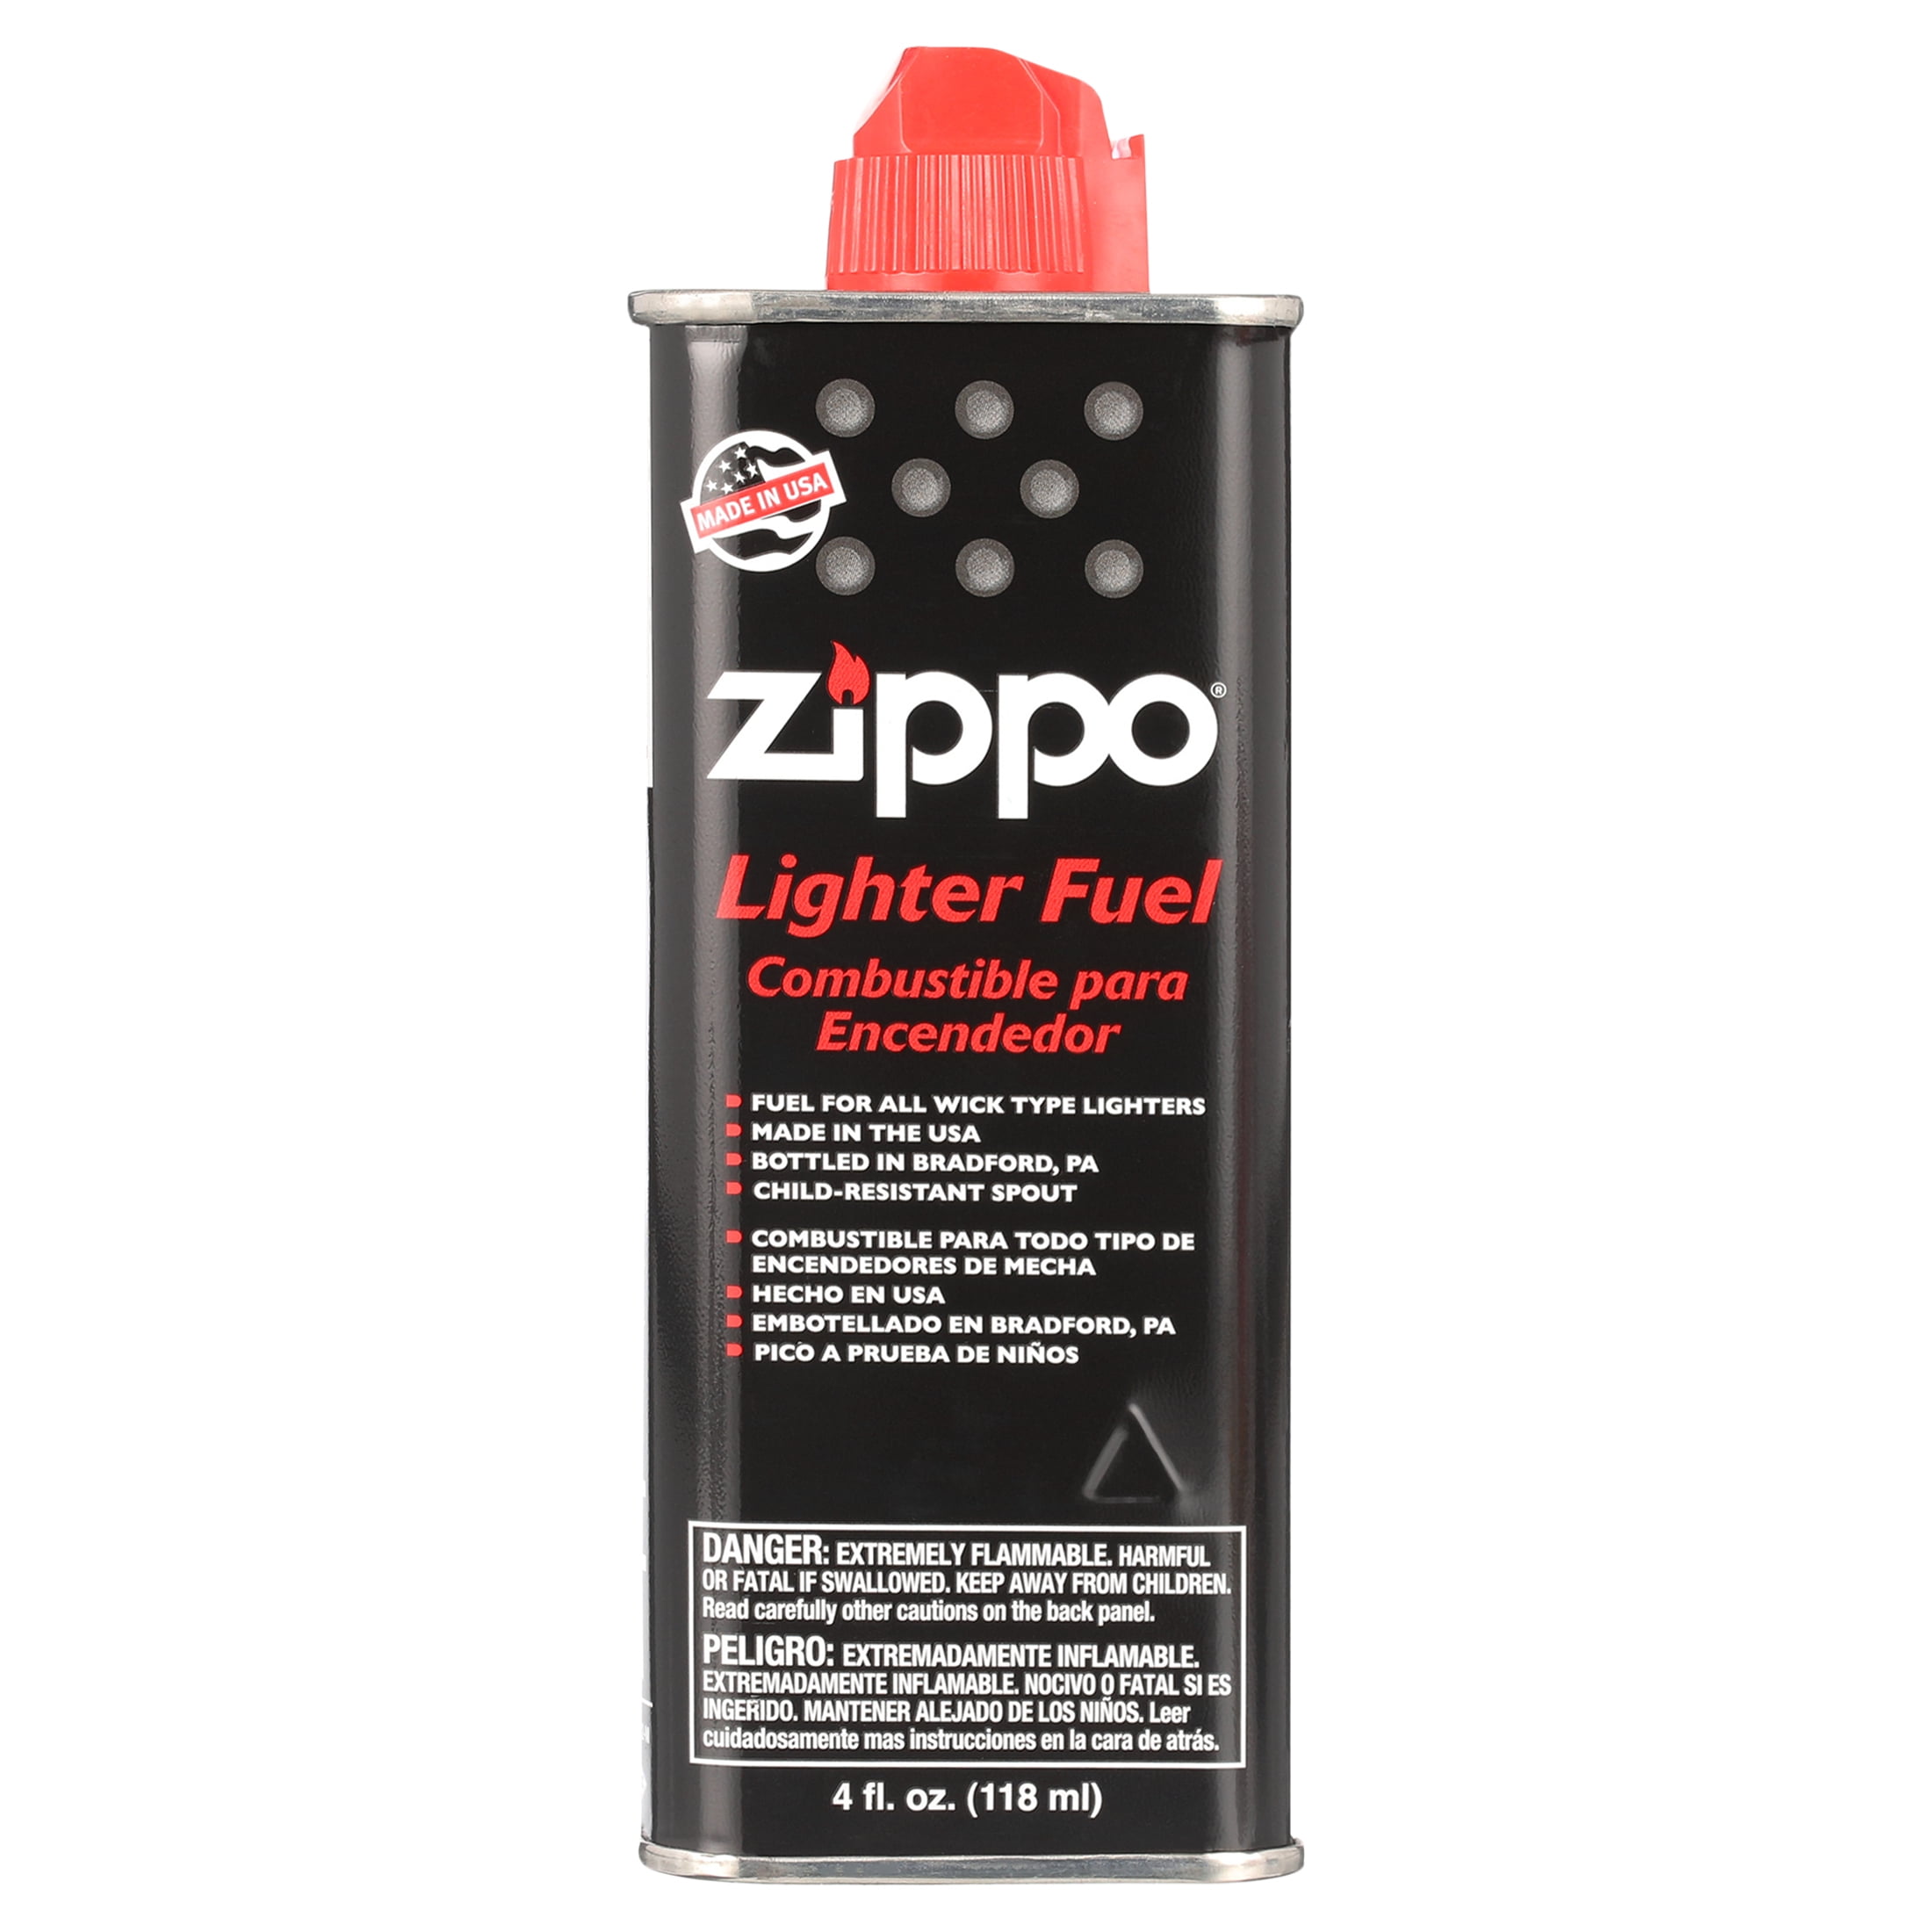 Zippo Lighter Genuine 6 x Wick value Pack 1WK-Z